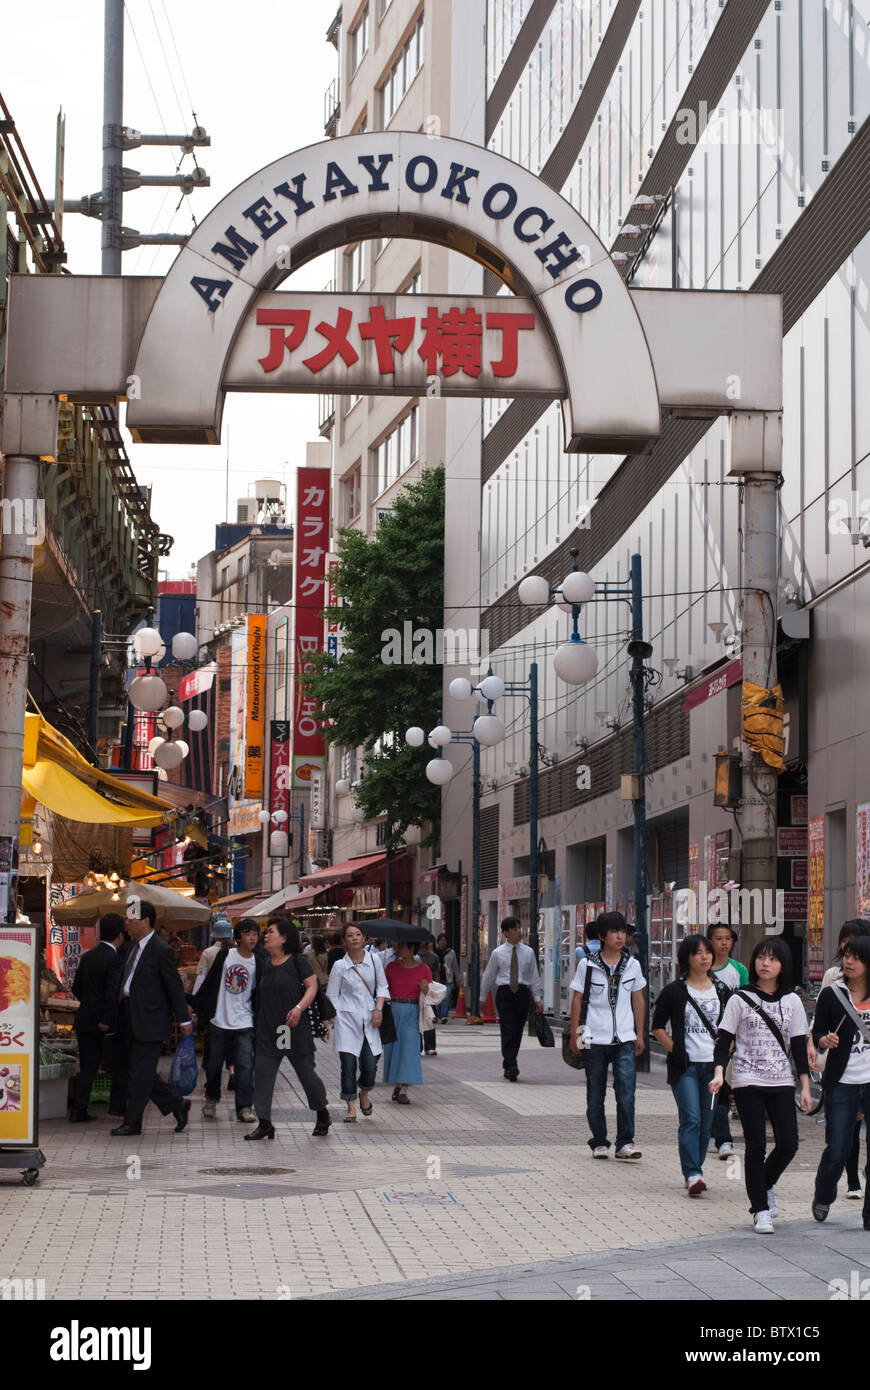 The entrance to Ameyayokocho Market Street, near Ueno, Tokyo Stock Photo